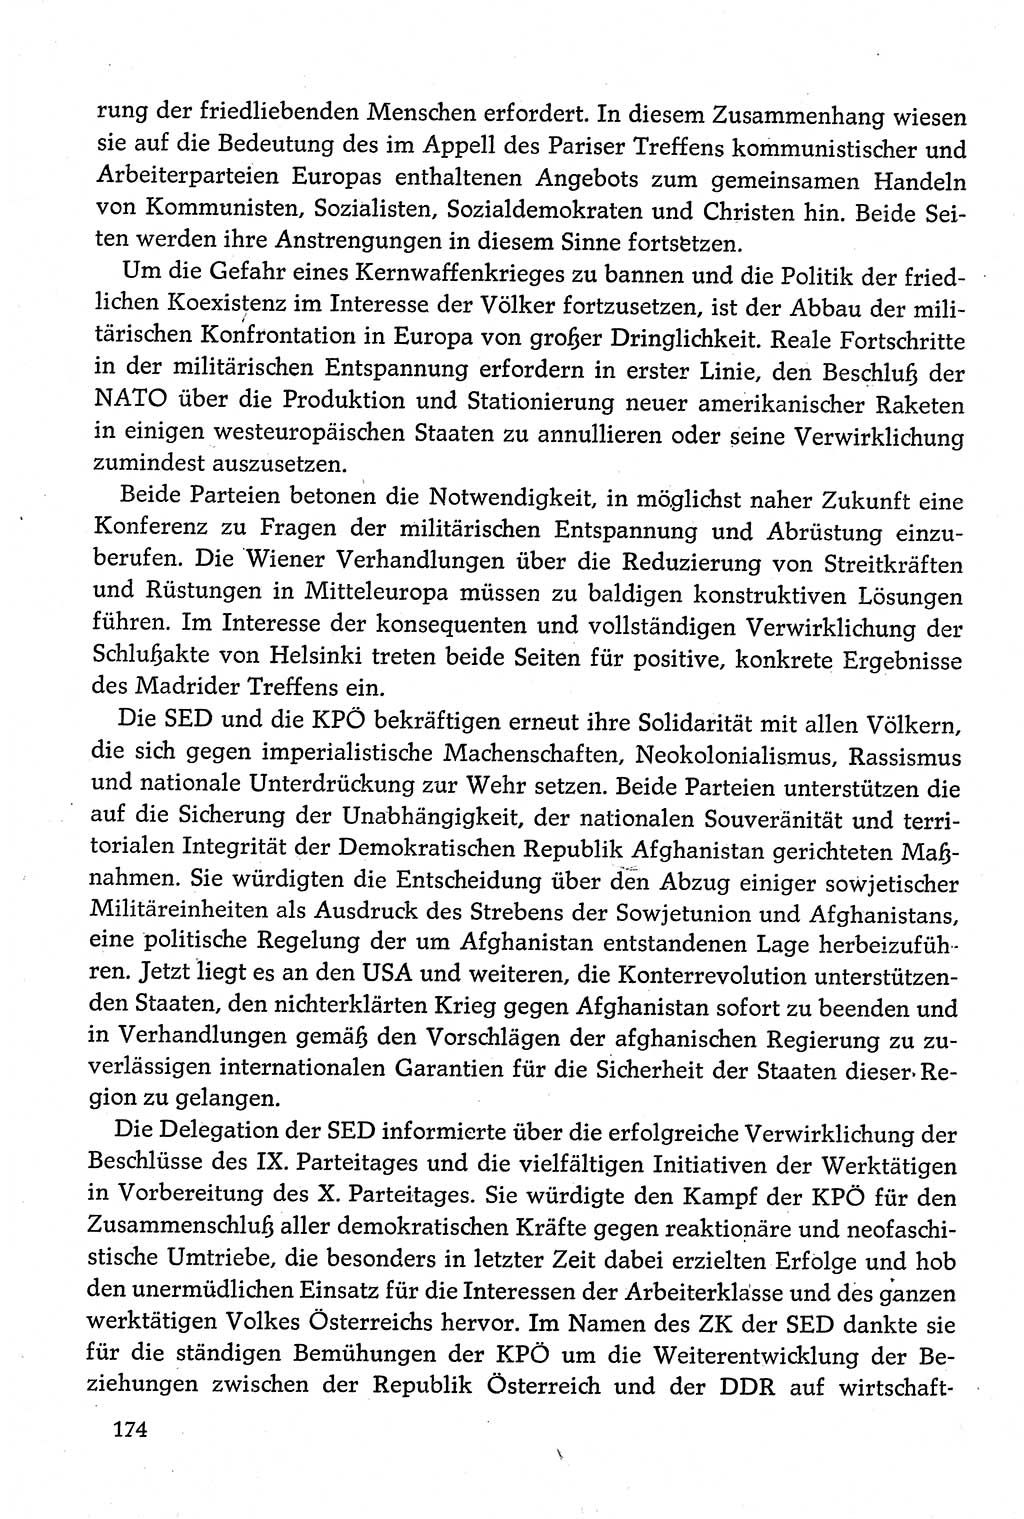 Dokumente der Sozialistischen Einheitspartei Deutschlands (SED) [Deutsche Demokratische Republik (DDR)] 1980-1981, Seite 174 (Dok. SED DDR 1980-1981, S. 174)